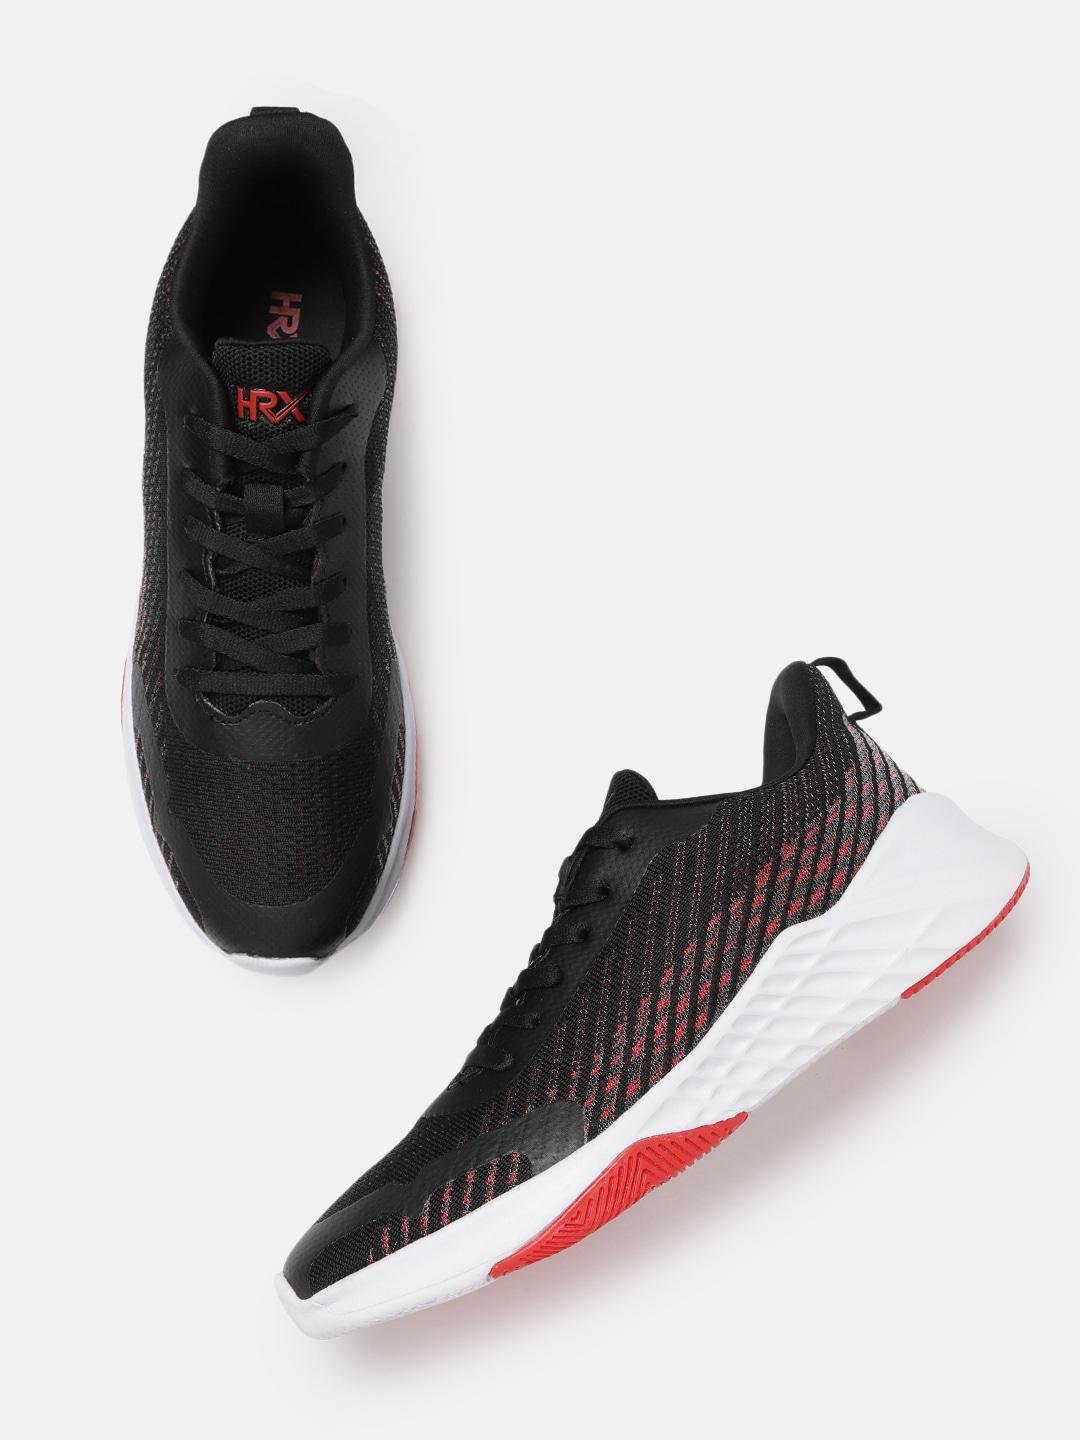 HRX by Hrithik Roshan Men Black & Red Woven Design Sneakers